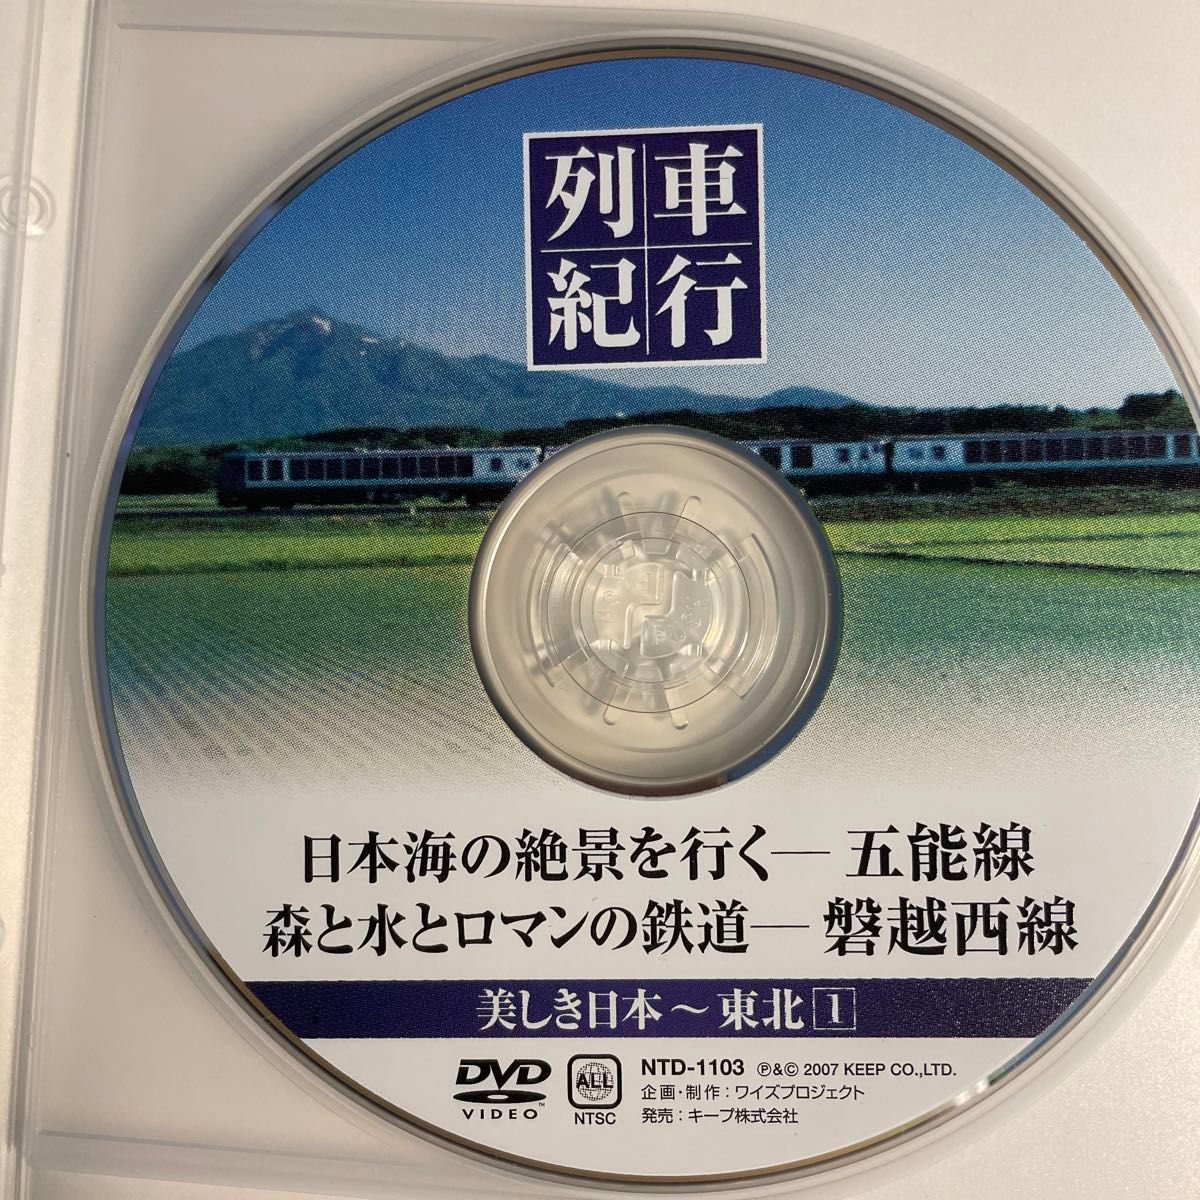 五能線 磐越西線 SLばんえつ物語号 (DVD) 列車紀行 美しき日本 3 東北 1/窪田等 (ナレーション) 2007